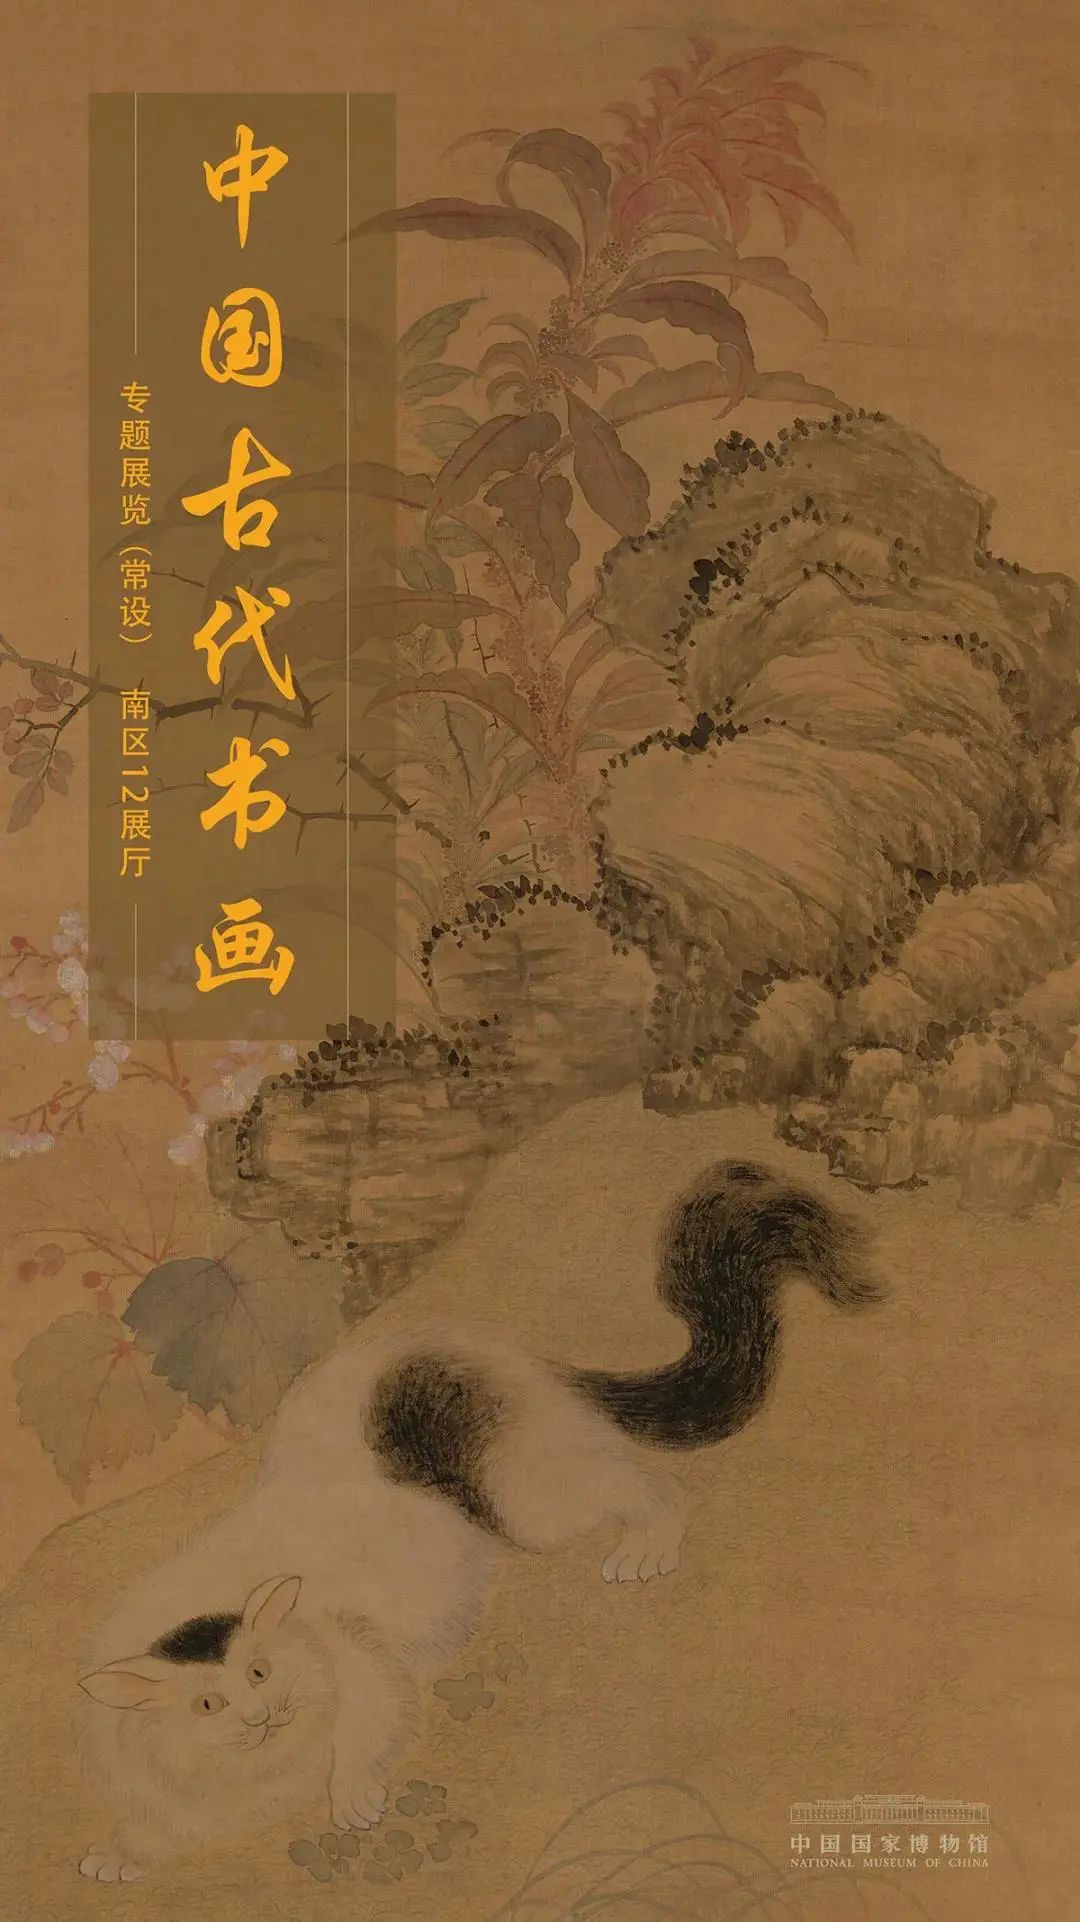 6件一级馆藏，多幅宋元古画，50余件名作展示中国书画脉络，国博“中国